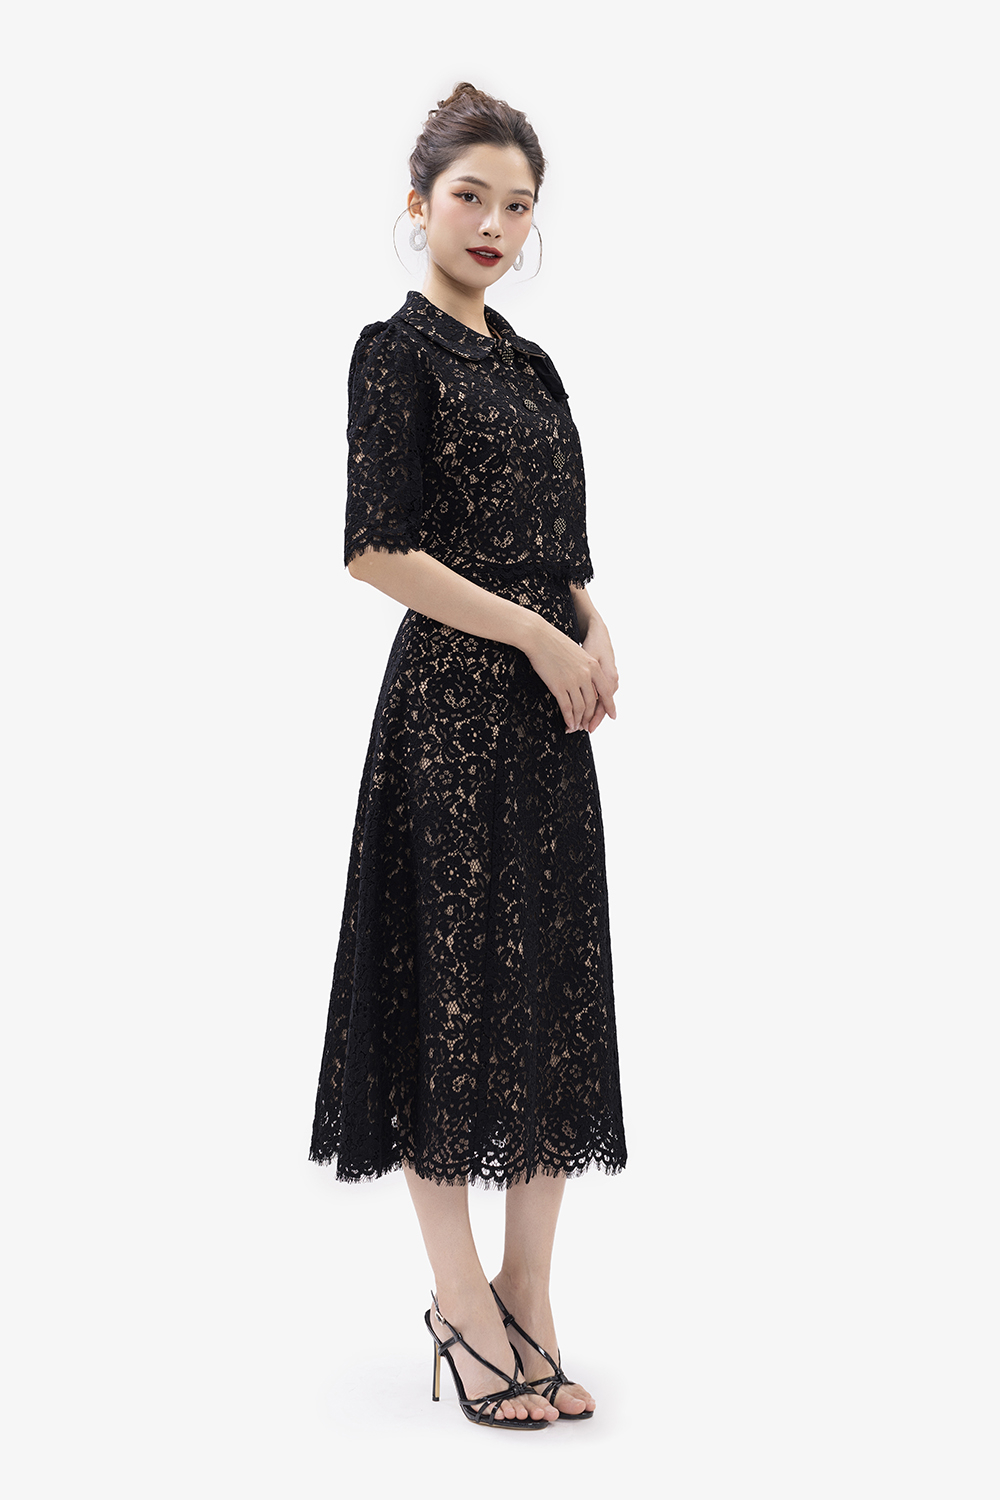 Đầm suông dáng dài cổ lệch KK140-29 | Thời trang công sở K&K Fashion